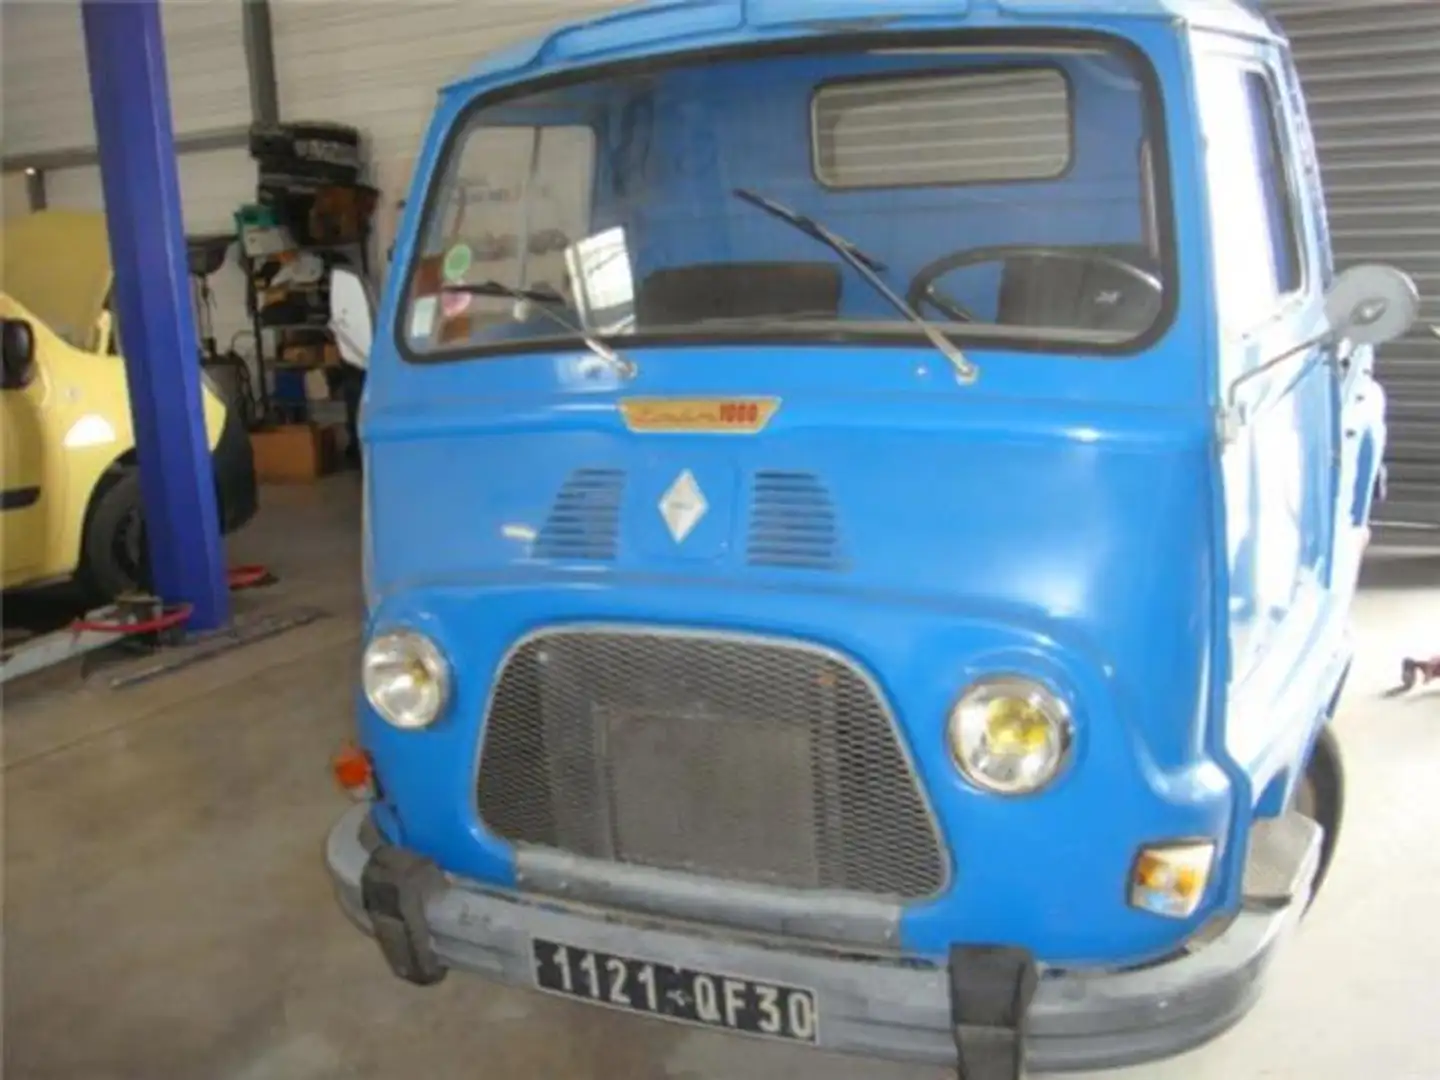 Oldtimer Renault Blue - 1